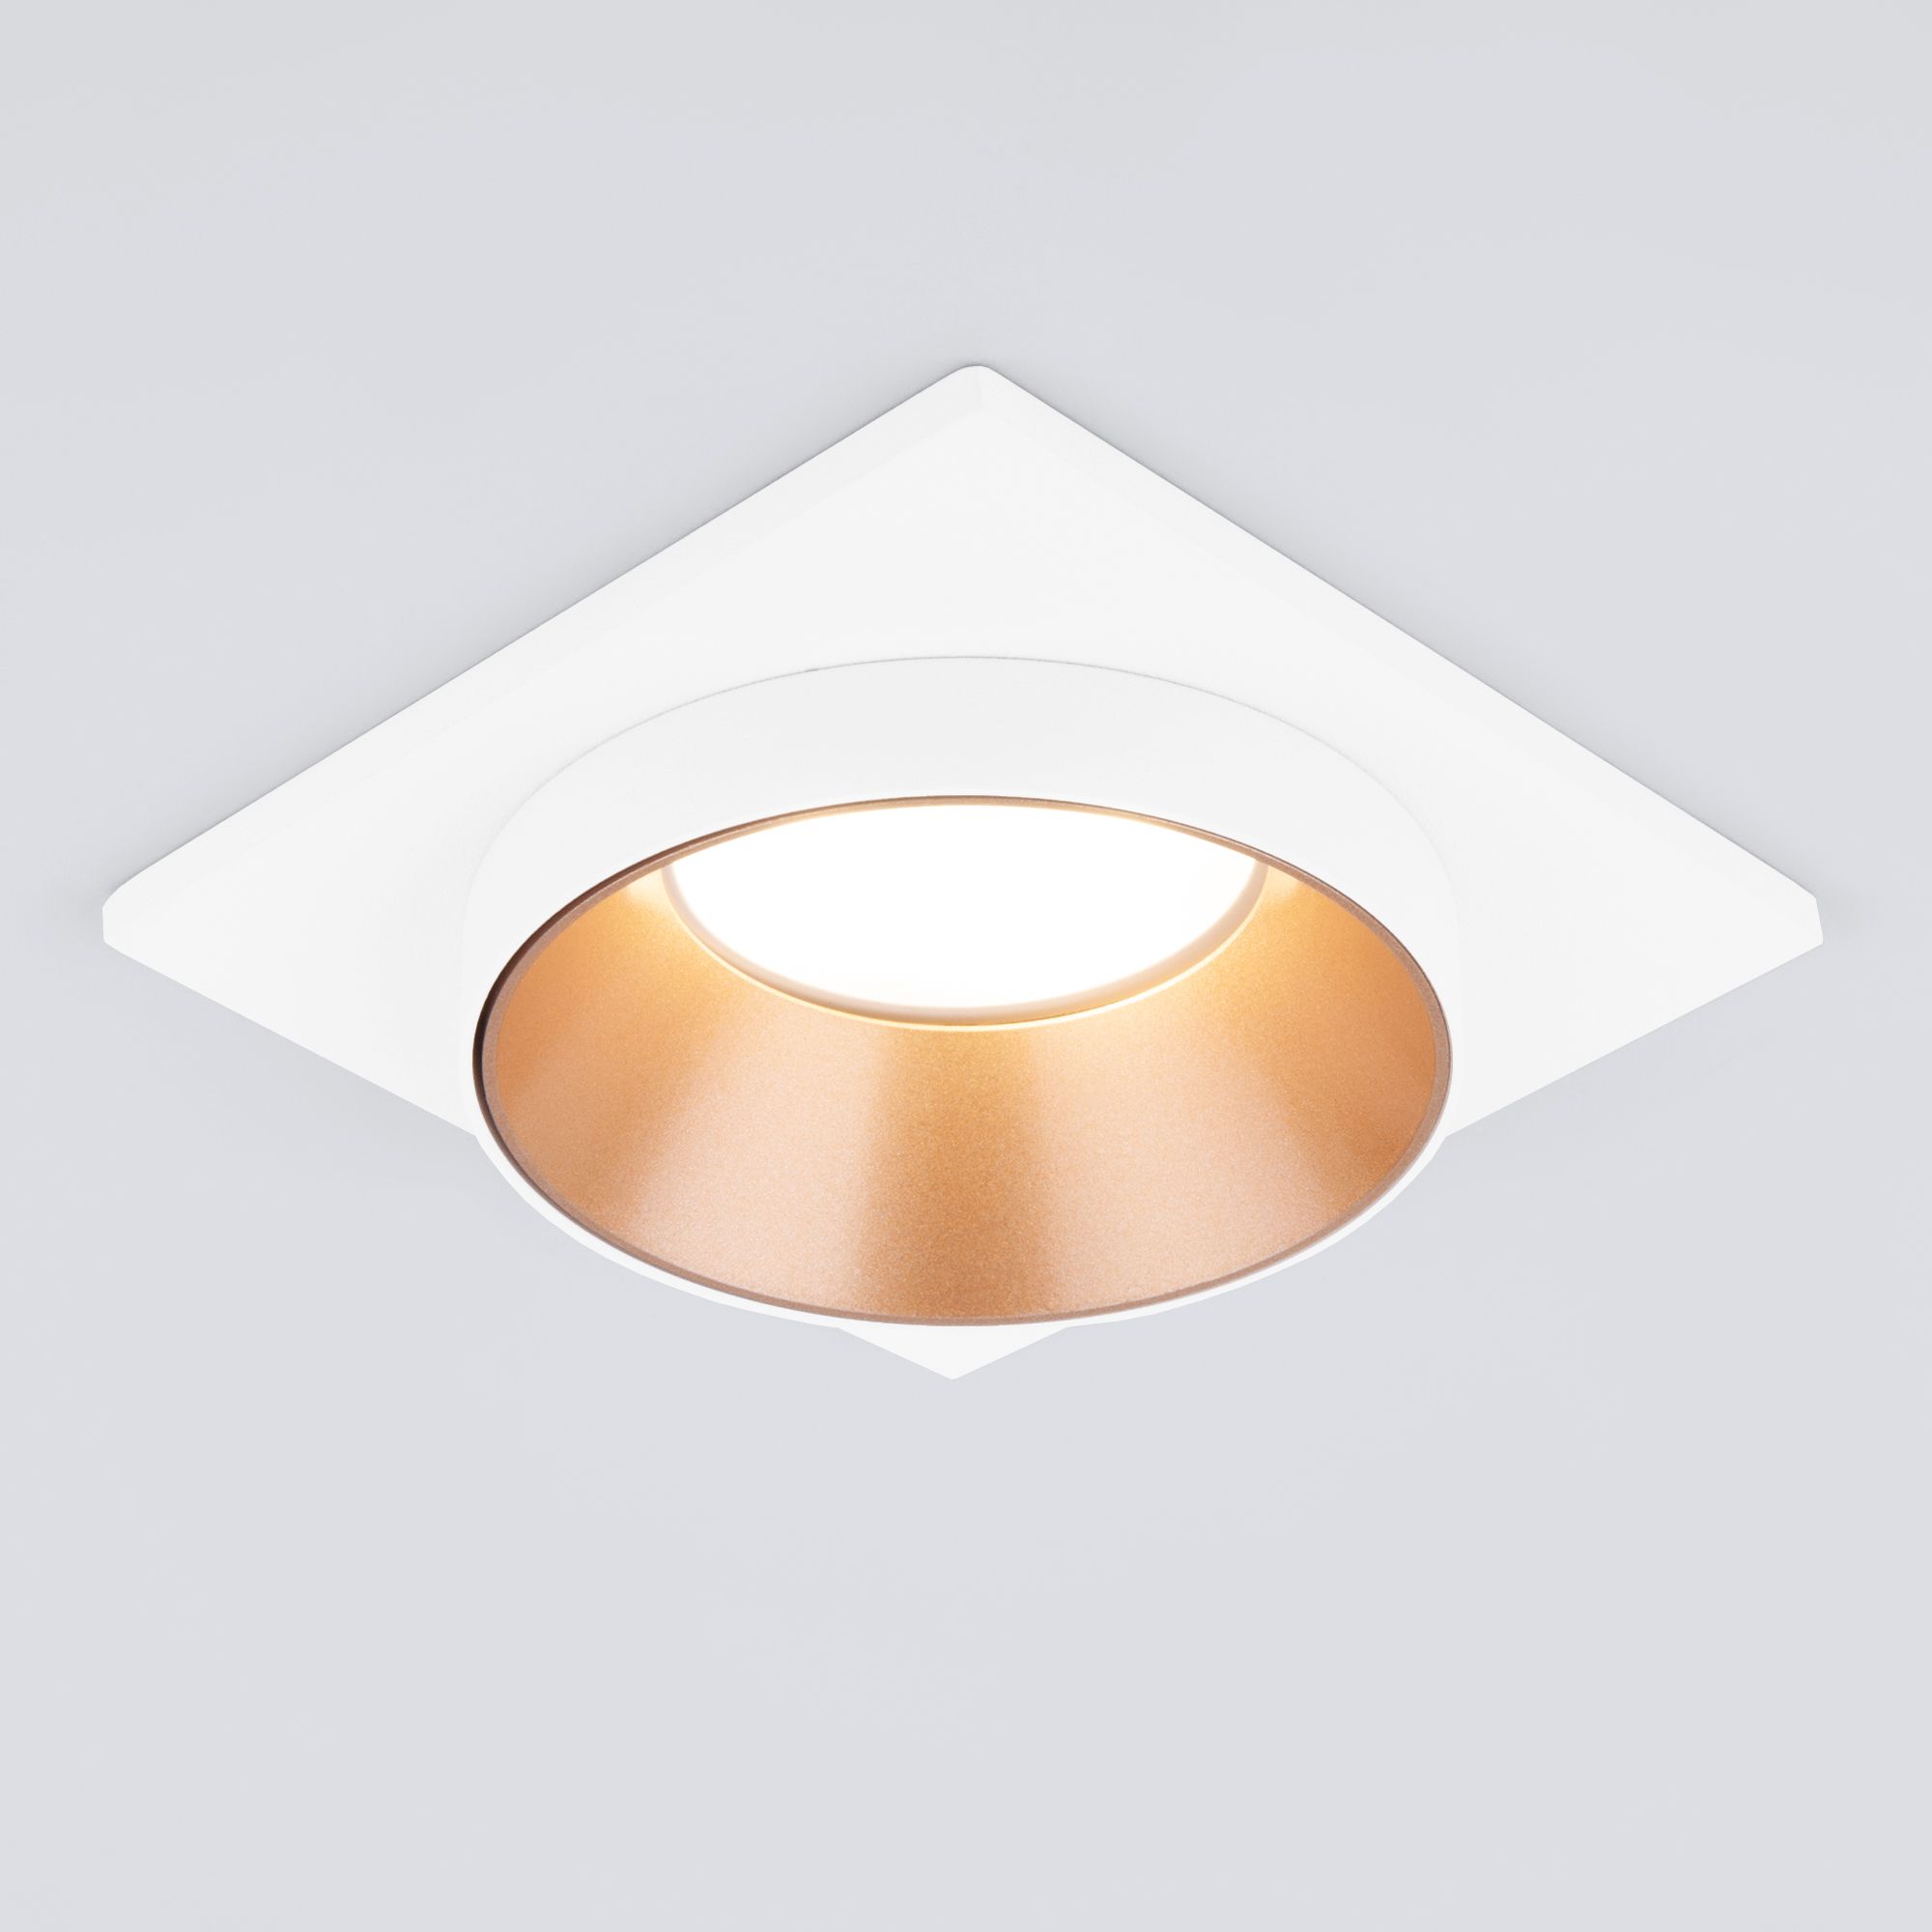 Встраиваемый точечный светильник 116 MR16 золото/белый